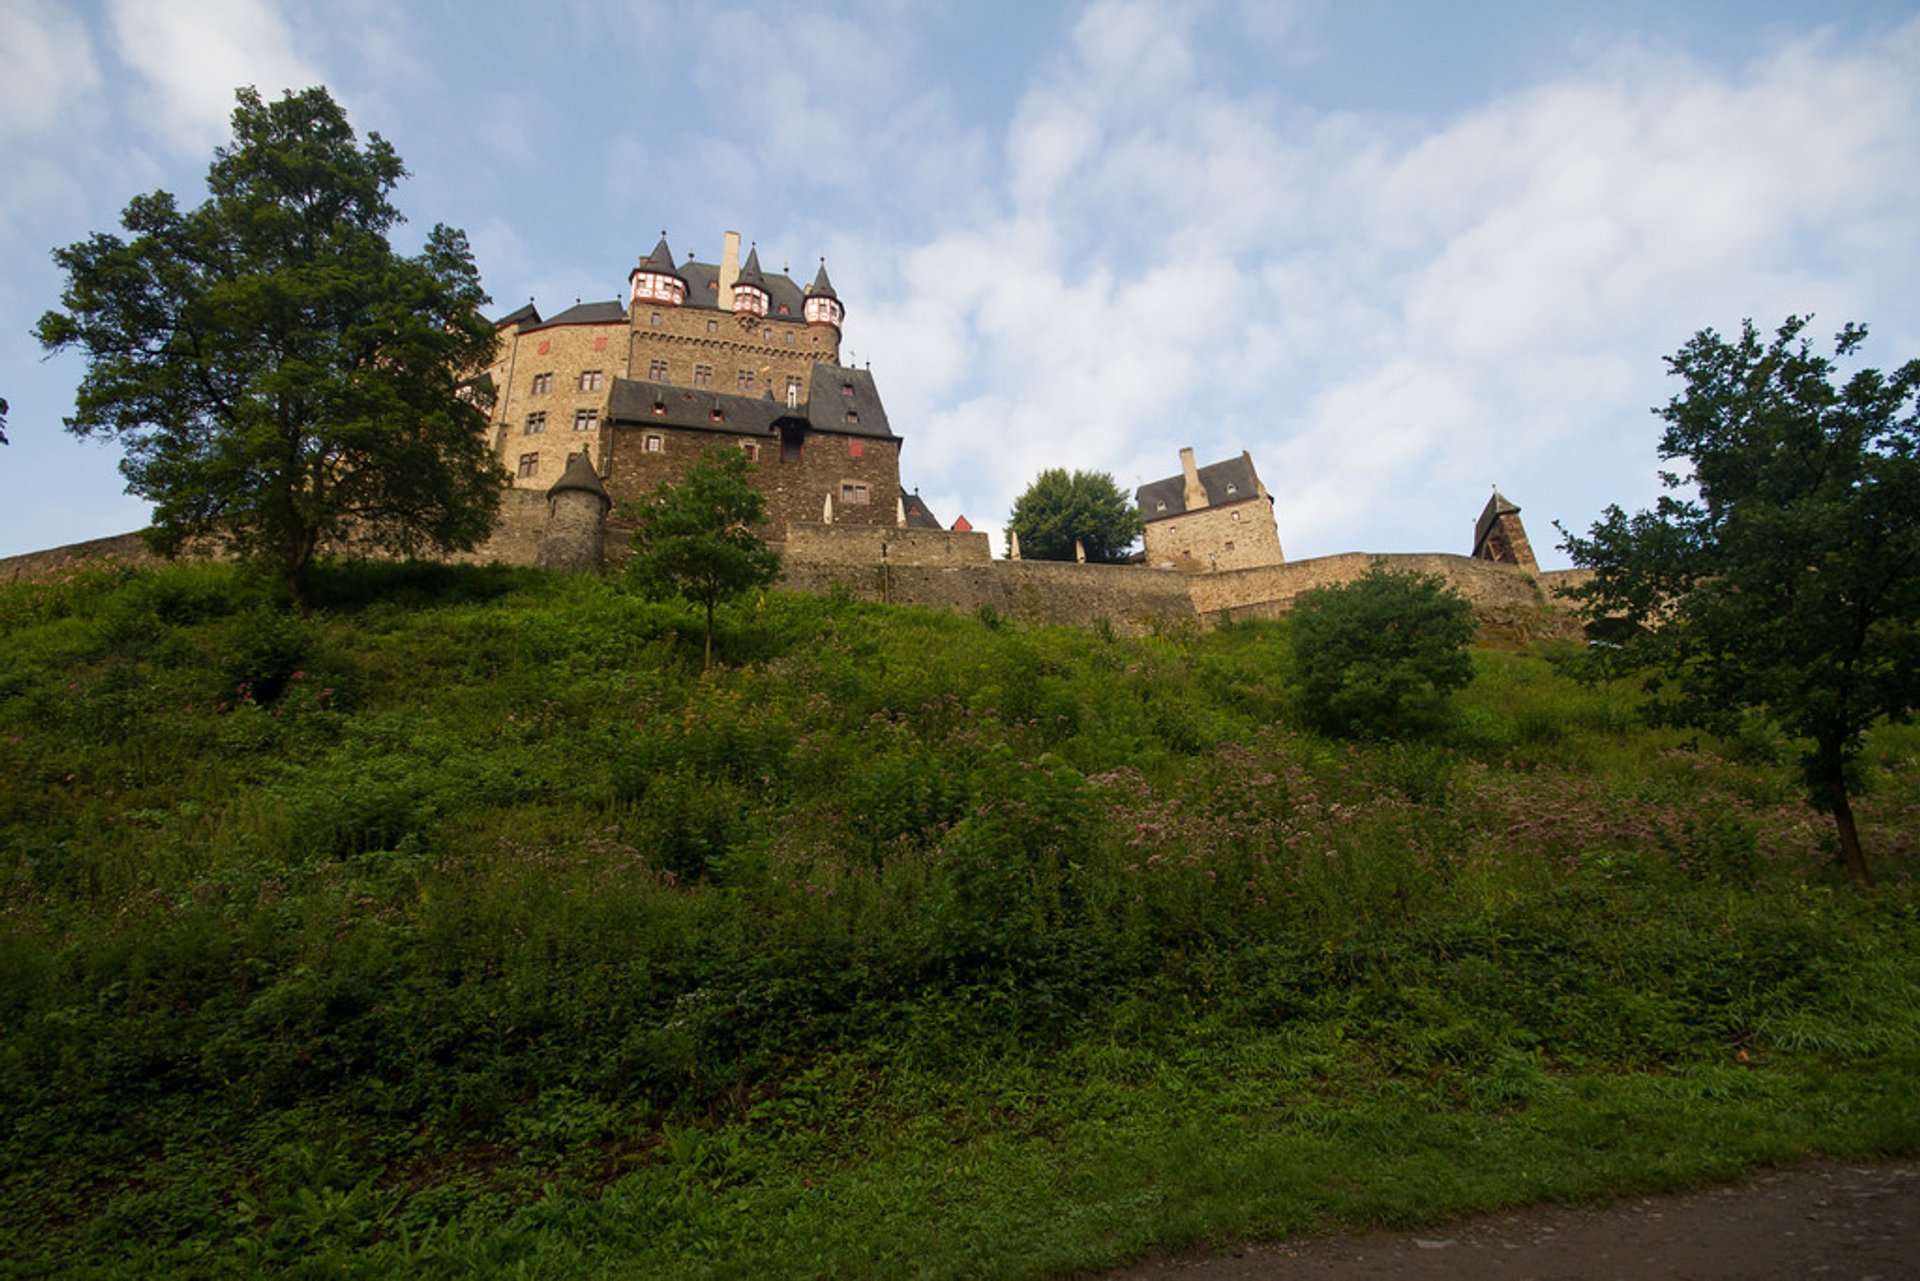 Château d'Eltz